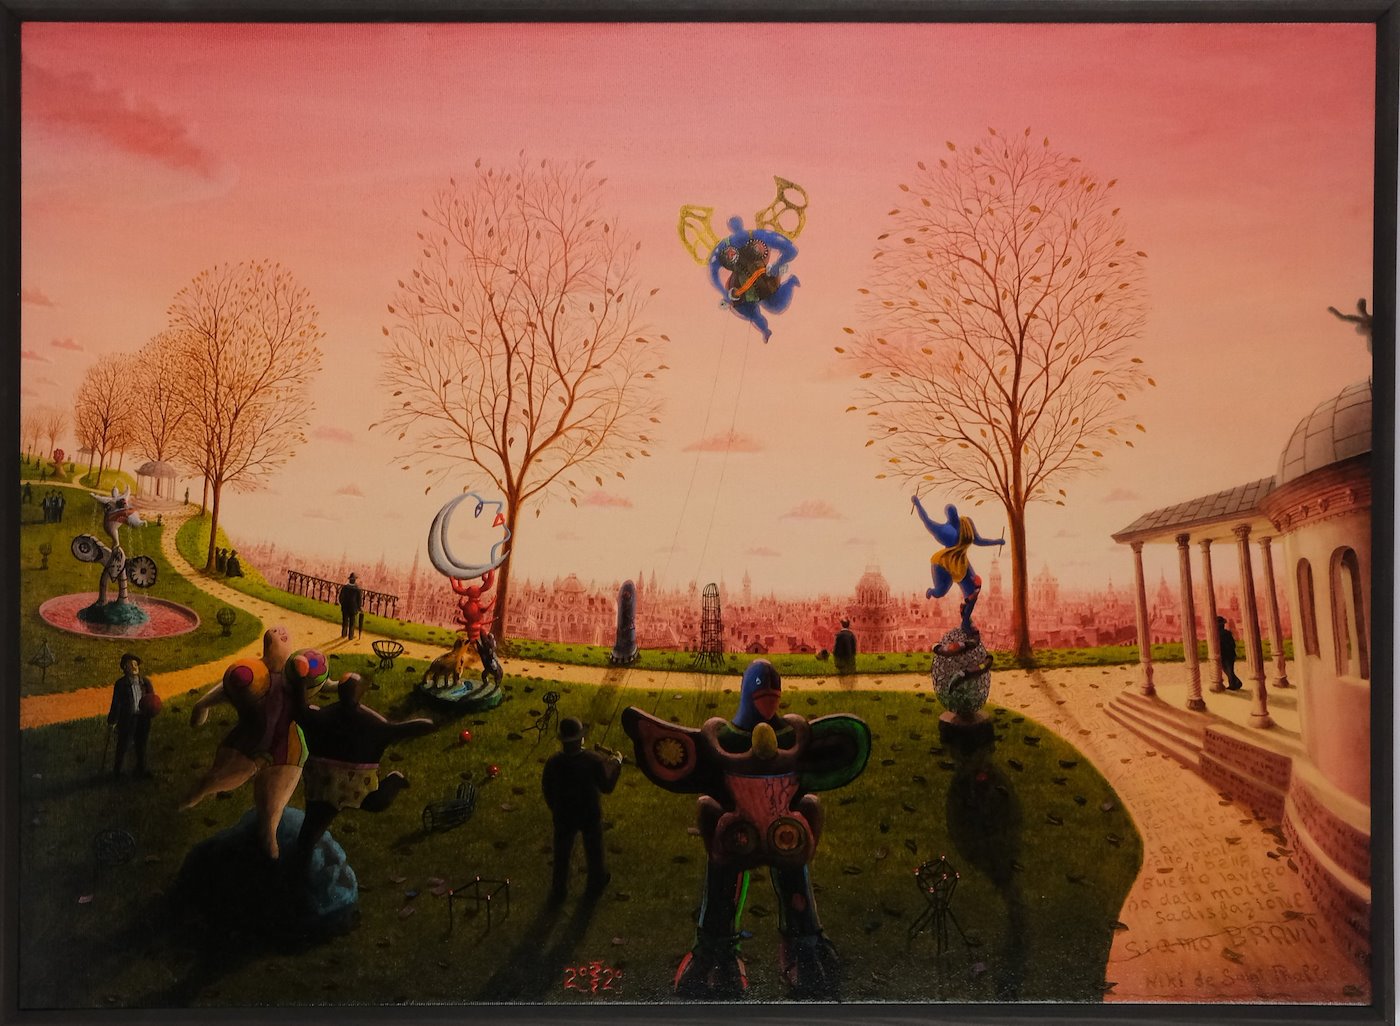 J.S. - Landscape with Men and Statues by Niki de Saint Phalle